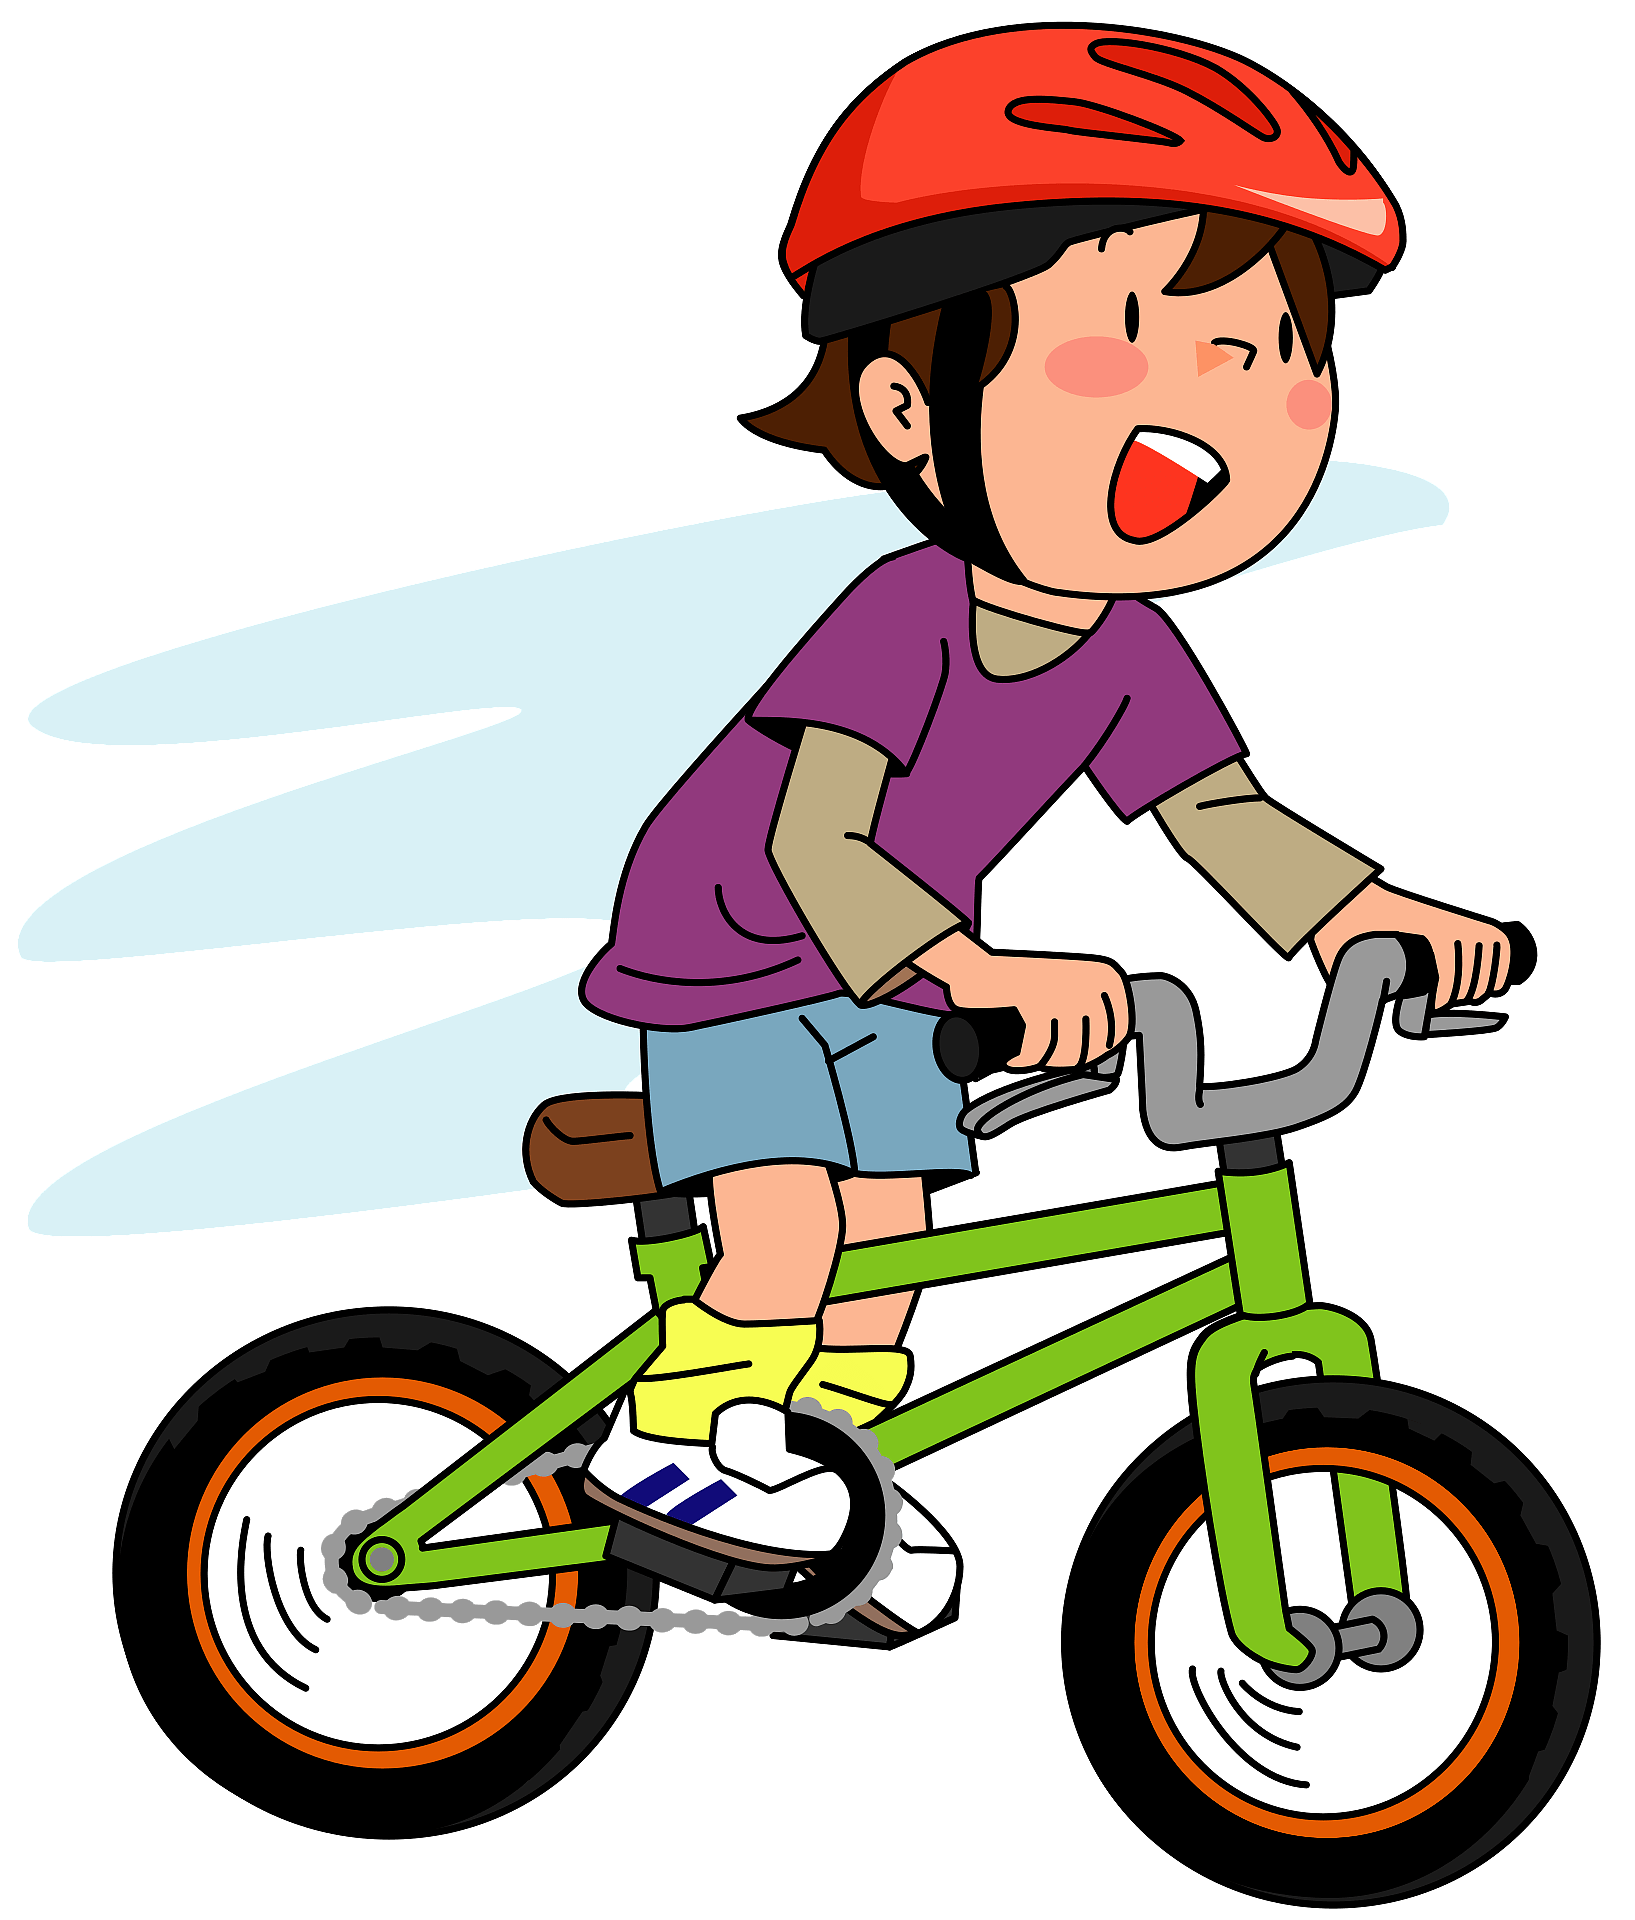 He likes sports. Мальчик едет на велосипеде. Мальчик катается на велосипеде. Велосипед рисунок. Велосипед клипарт.